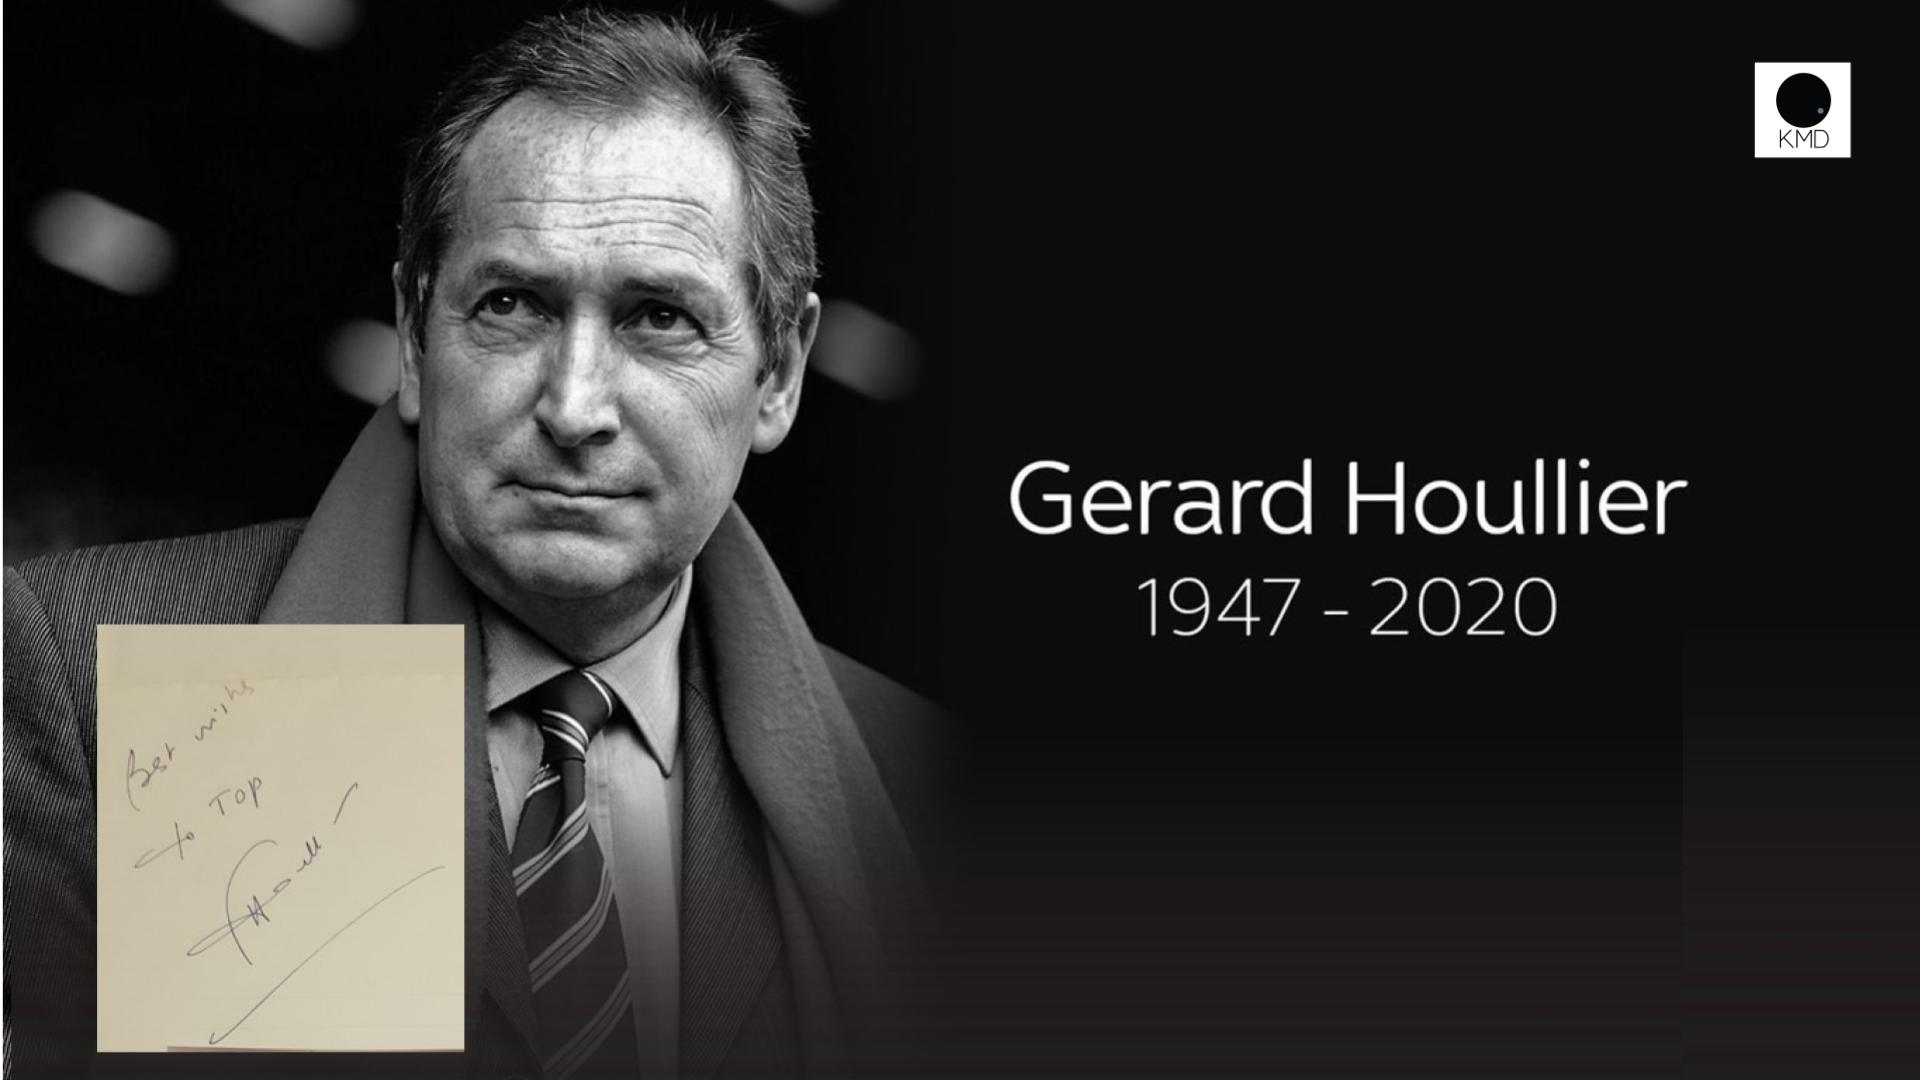 “Gerard Houllier” 1947-2020